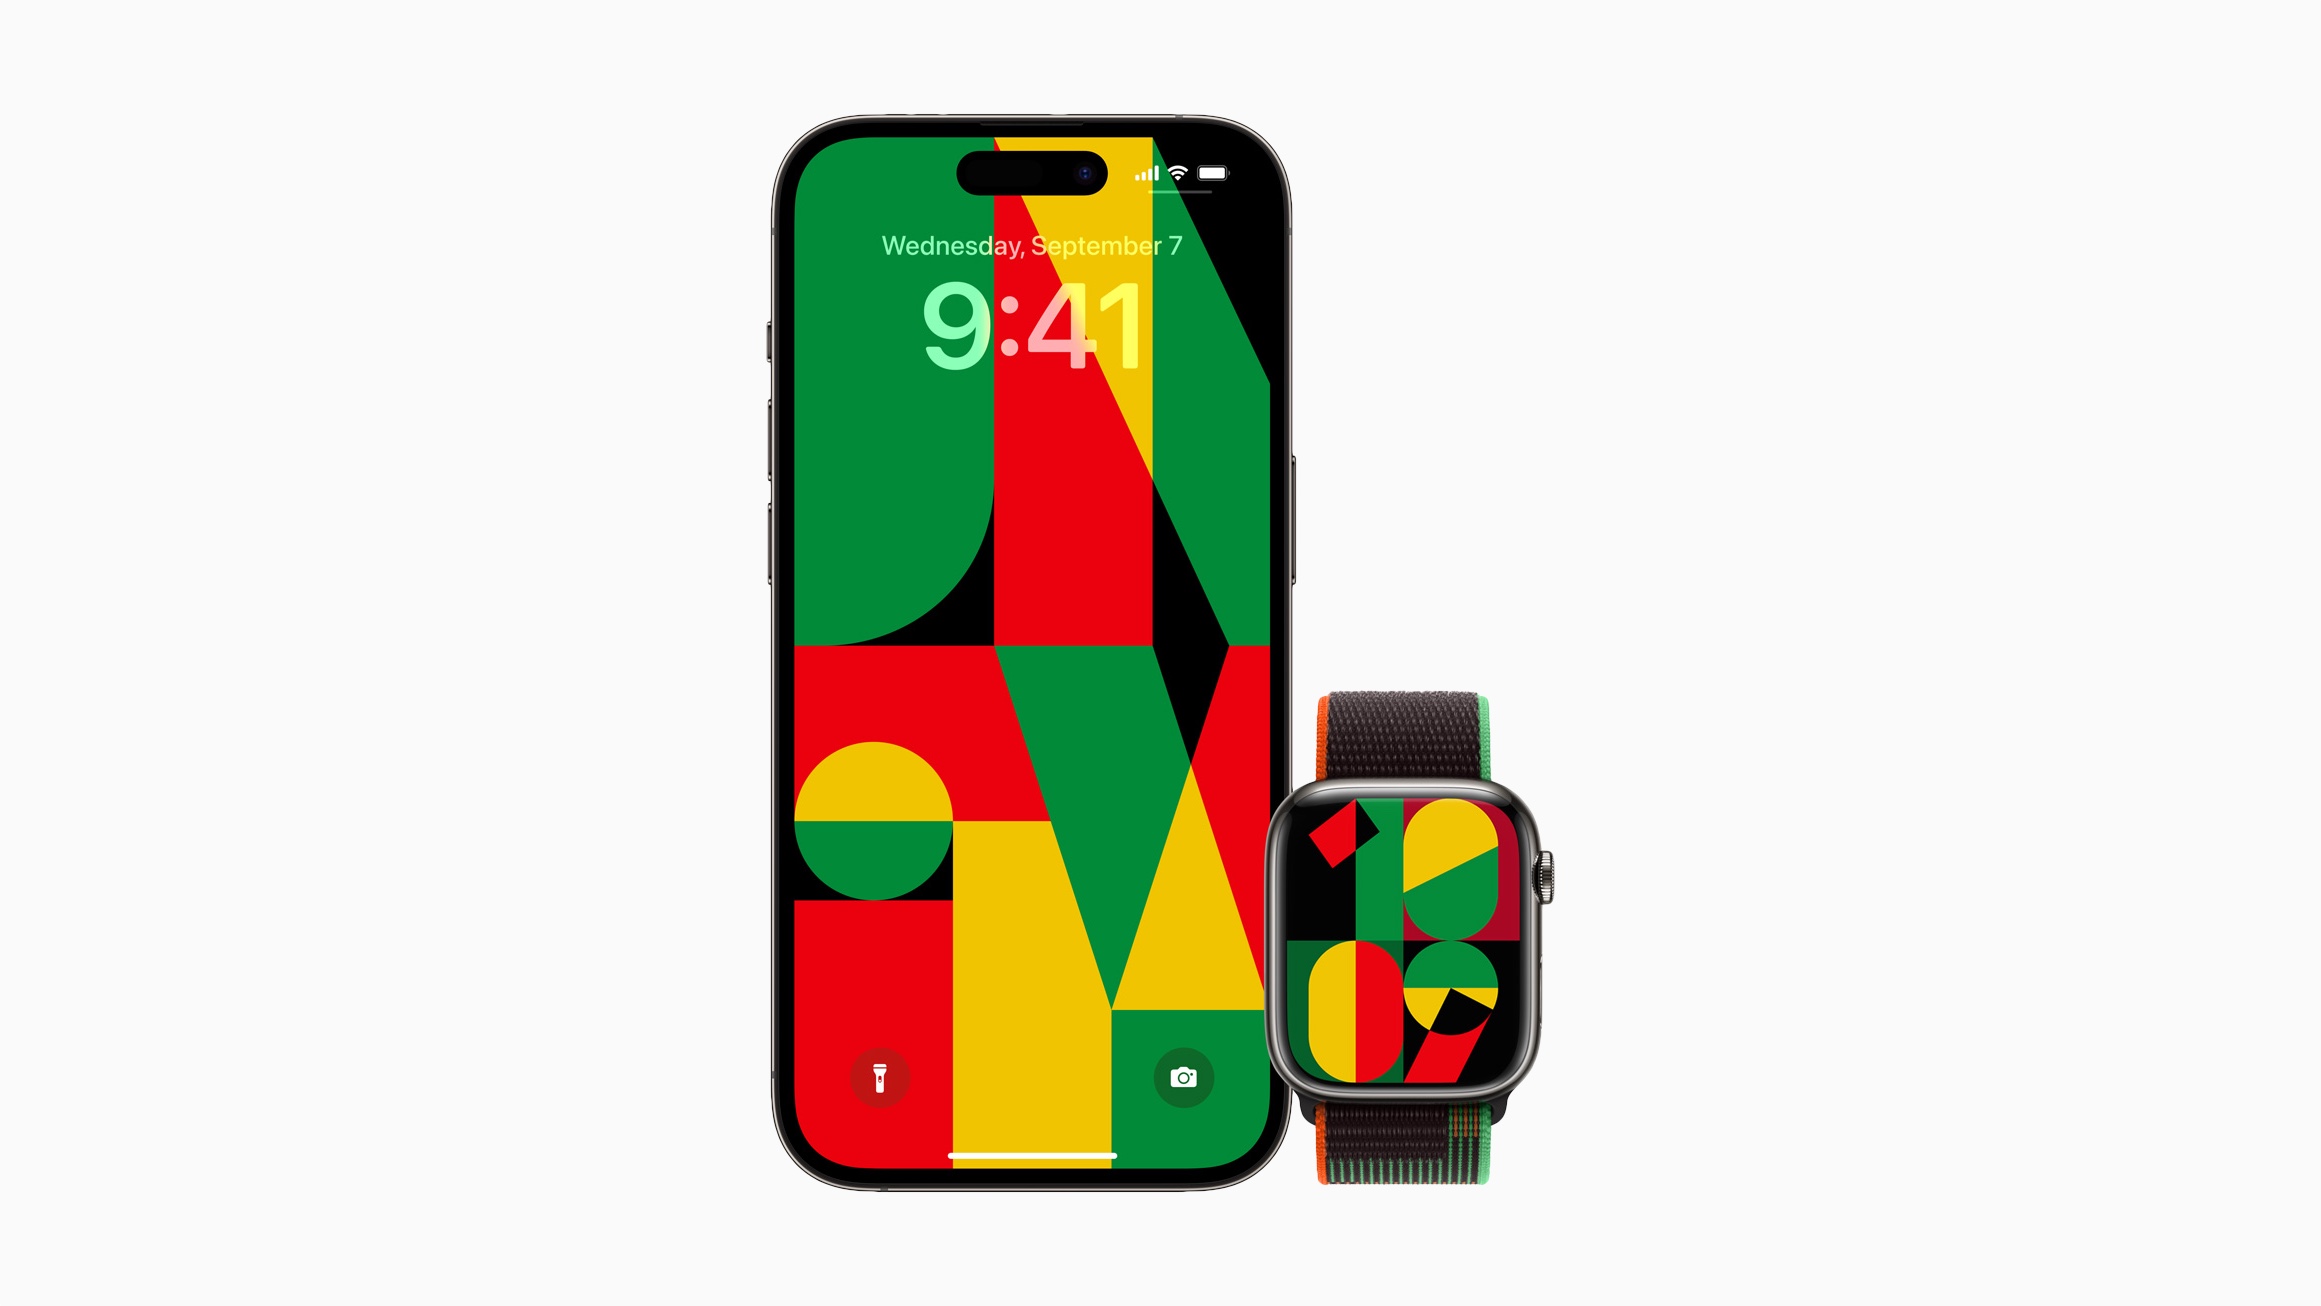 Apple Watch Black Unity Sport Loop, tampilan jam, dan wallpaper iPhone terinspirasi oleh proses kreatif mozaik, semangat komunitas Kulit Hitam, dan kekuatan persatuan.